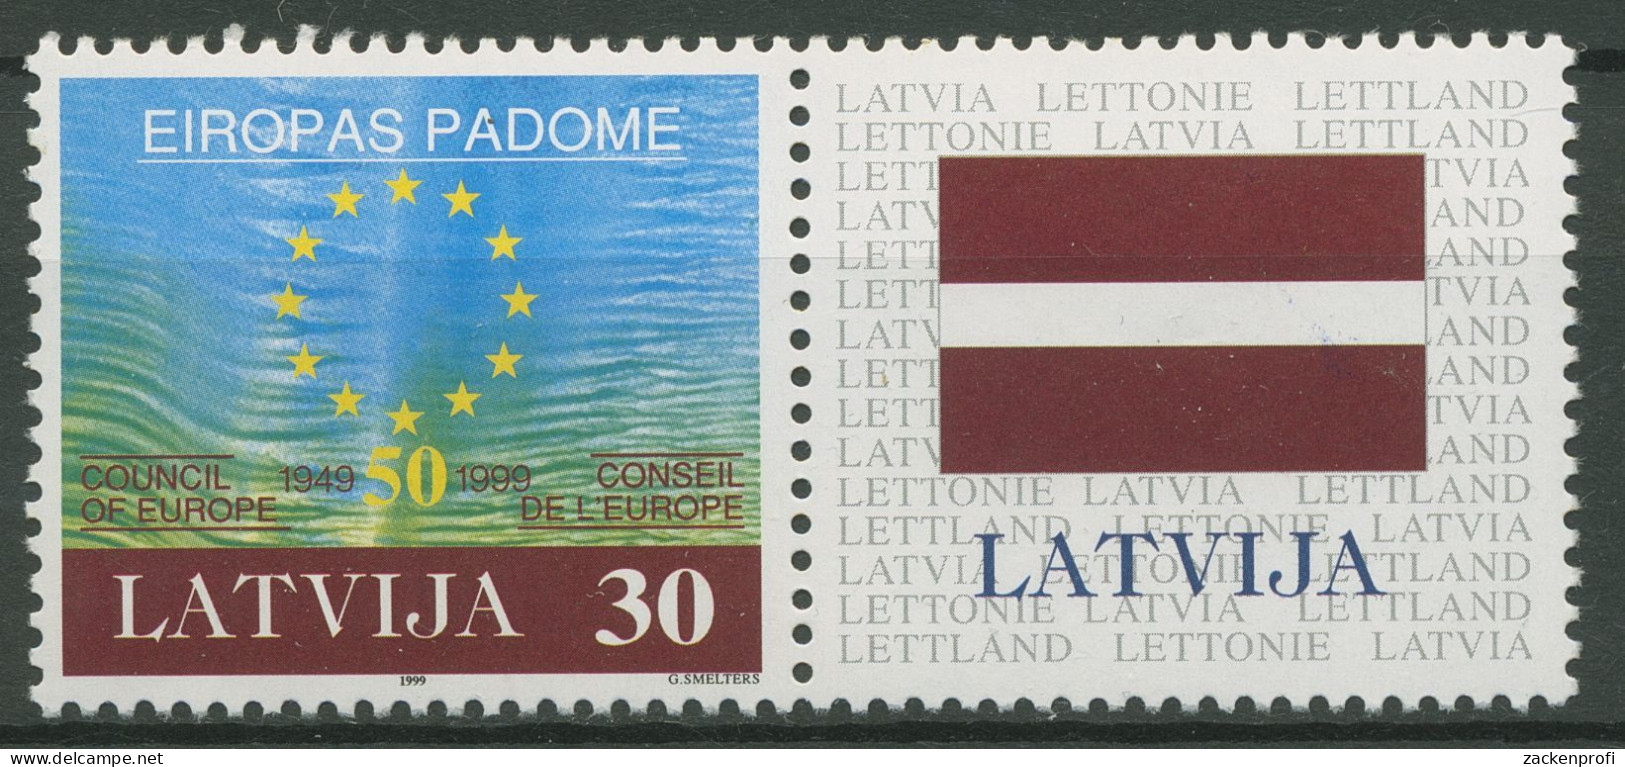 Lettland 1999 50 Jahre Europarat 500 Zf Postfrisch - Letonia